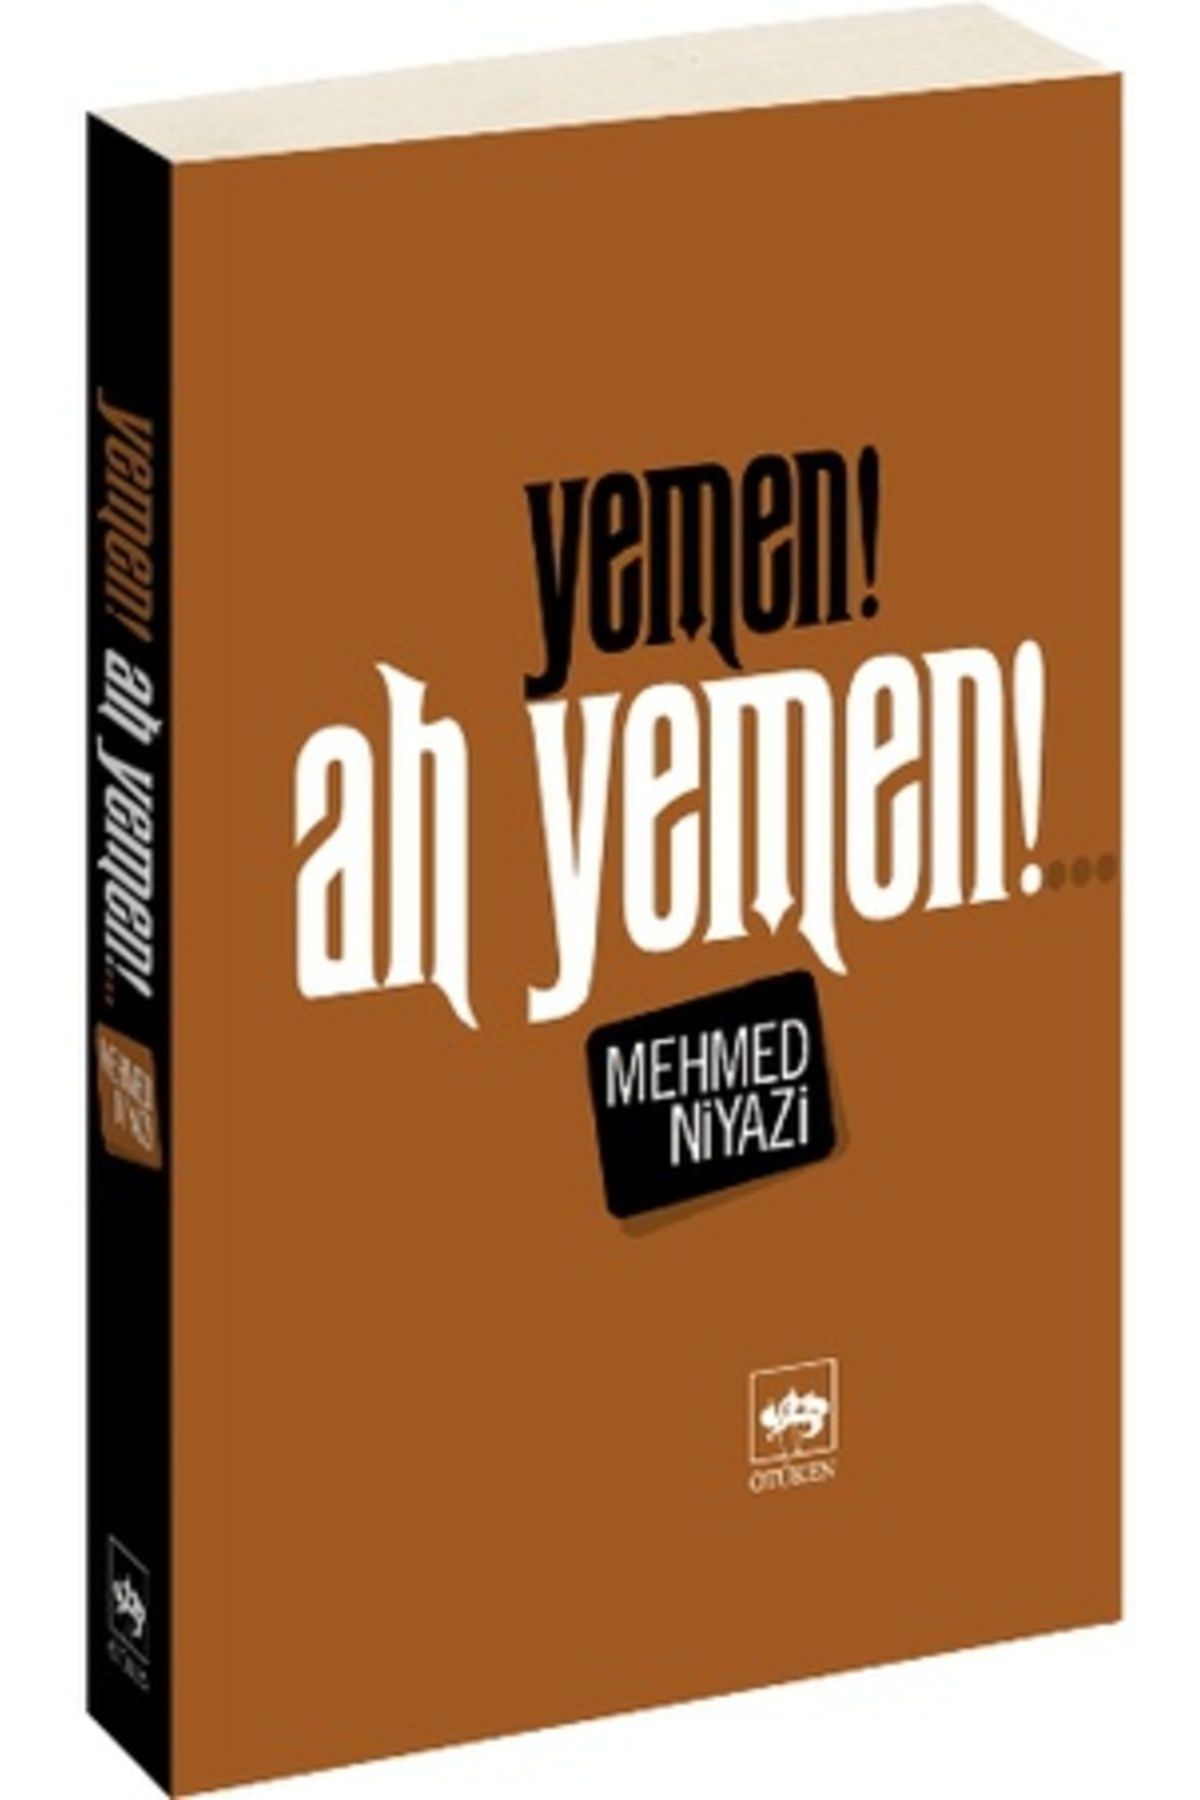 Ötüken Neşriyat Yemen! Ah Yemen!